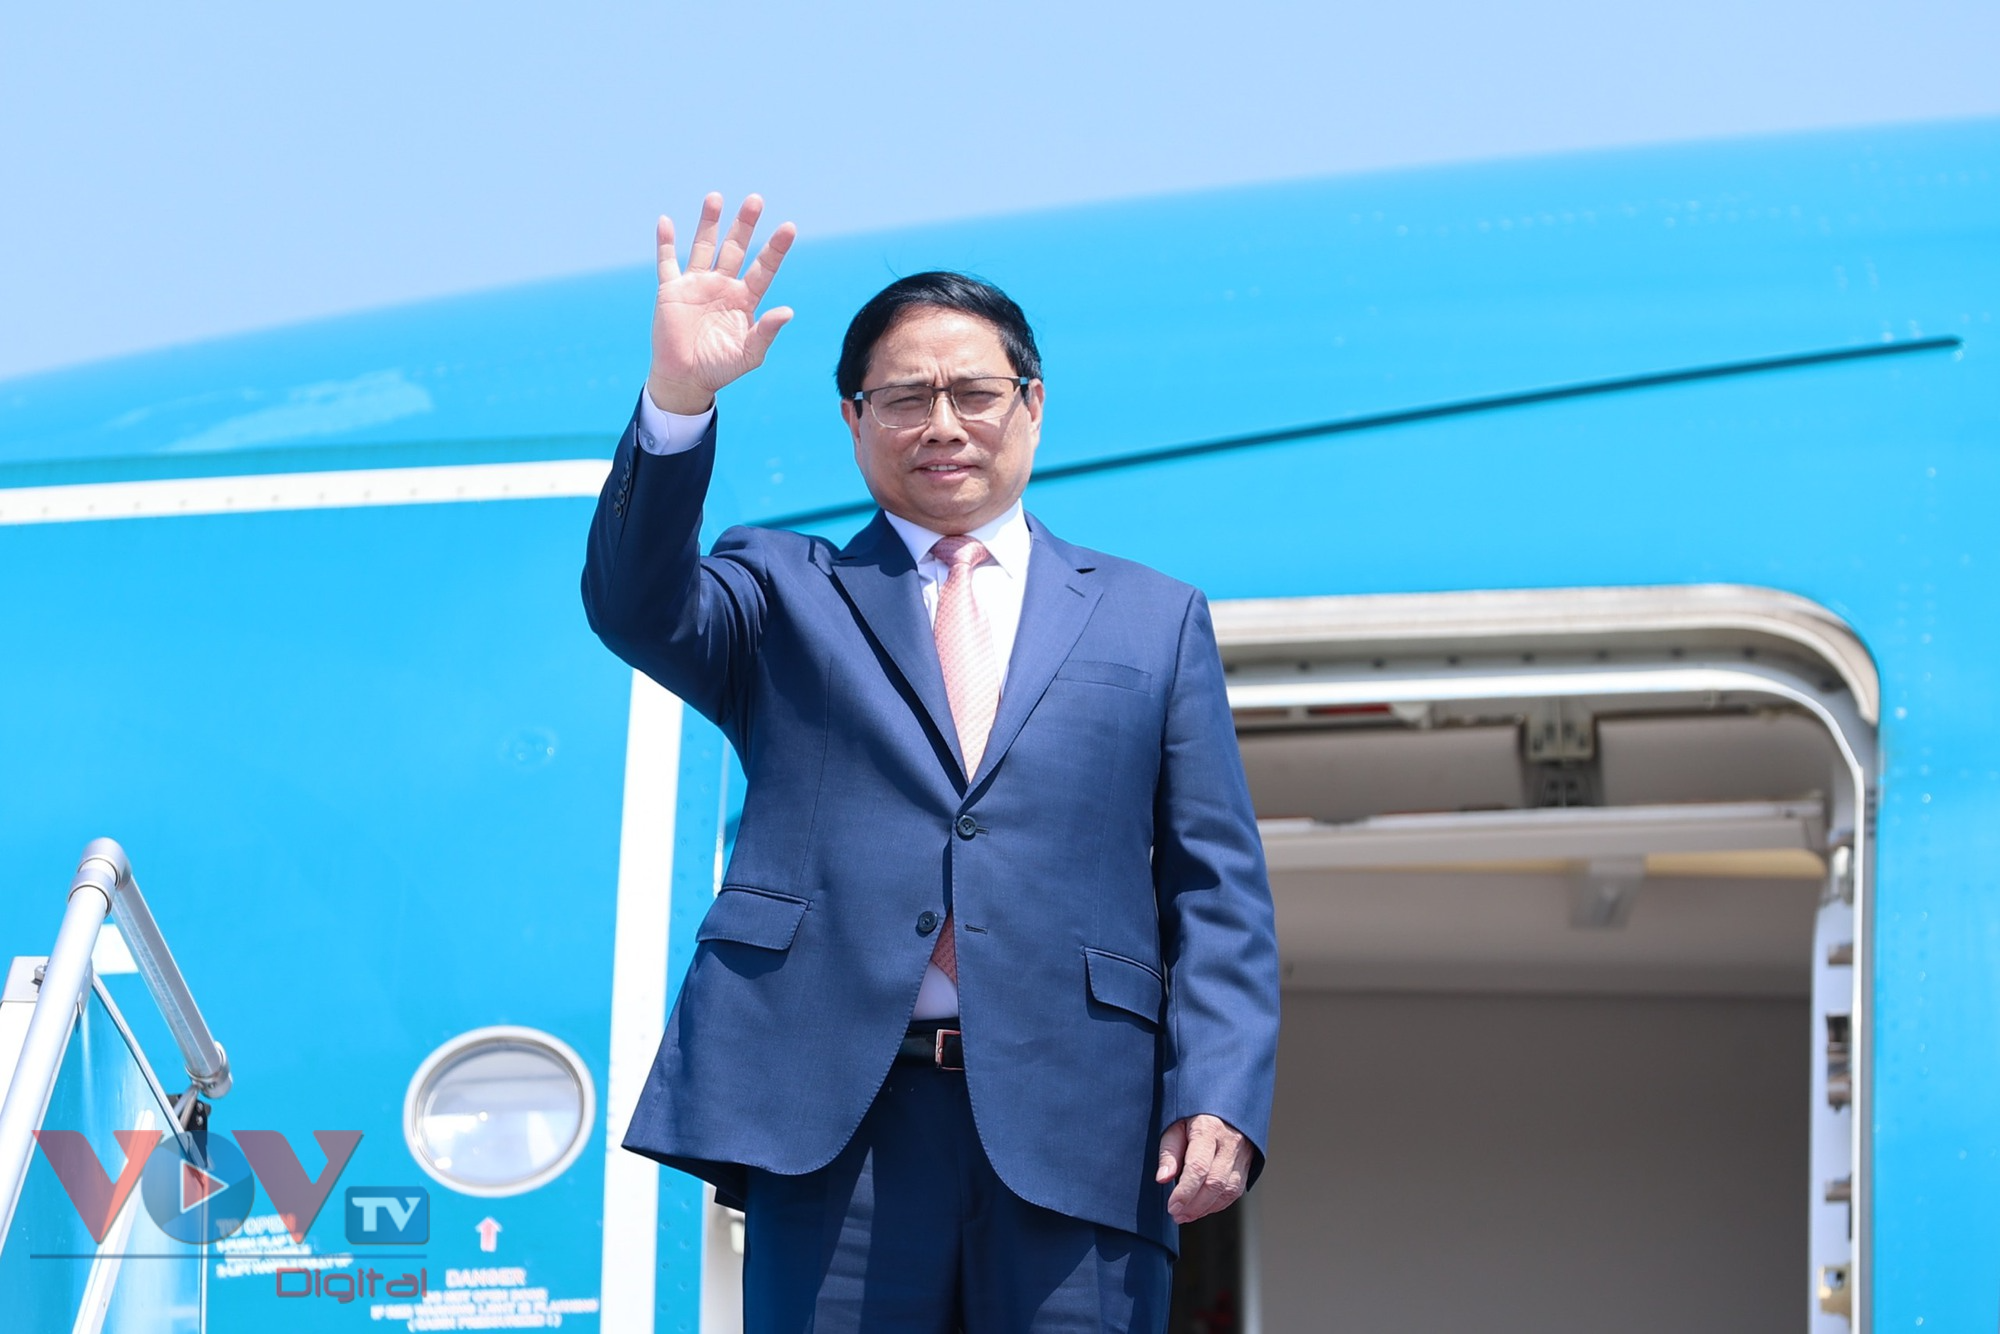 Thủ tướng Phạm Minh Chính lên đường tham dự Hội nghị cấp cao ASEAN - GCC và thăm Vương quốc Saudi Arabia - Ảnh 2.